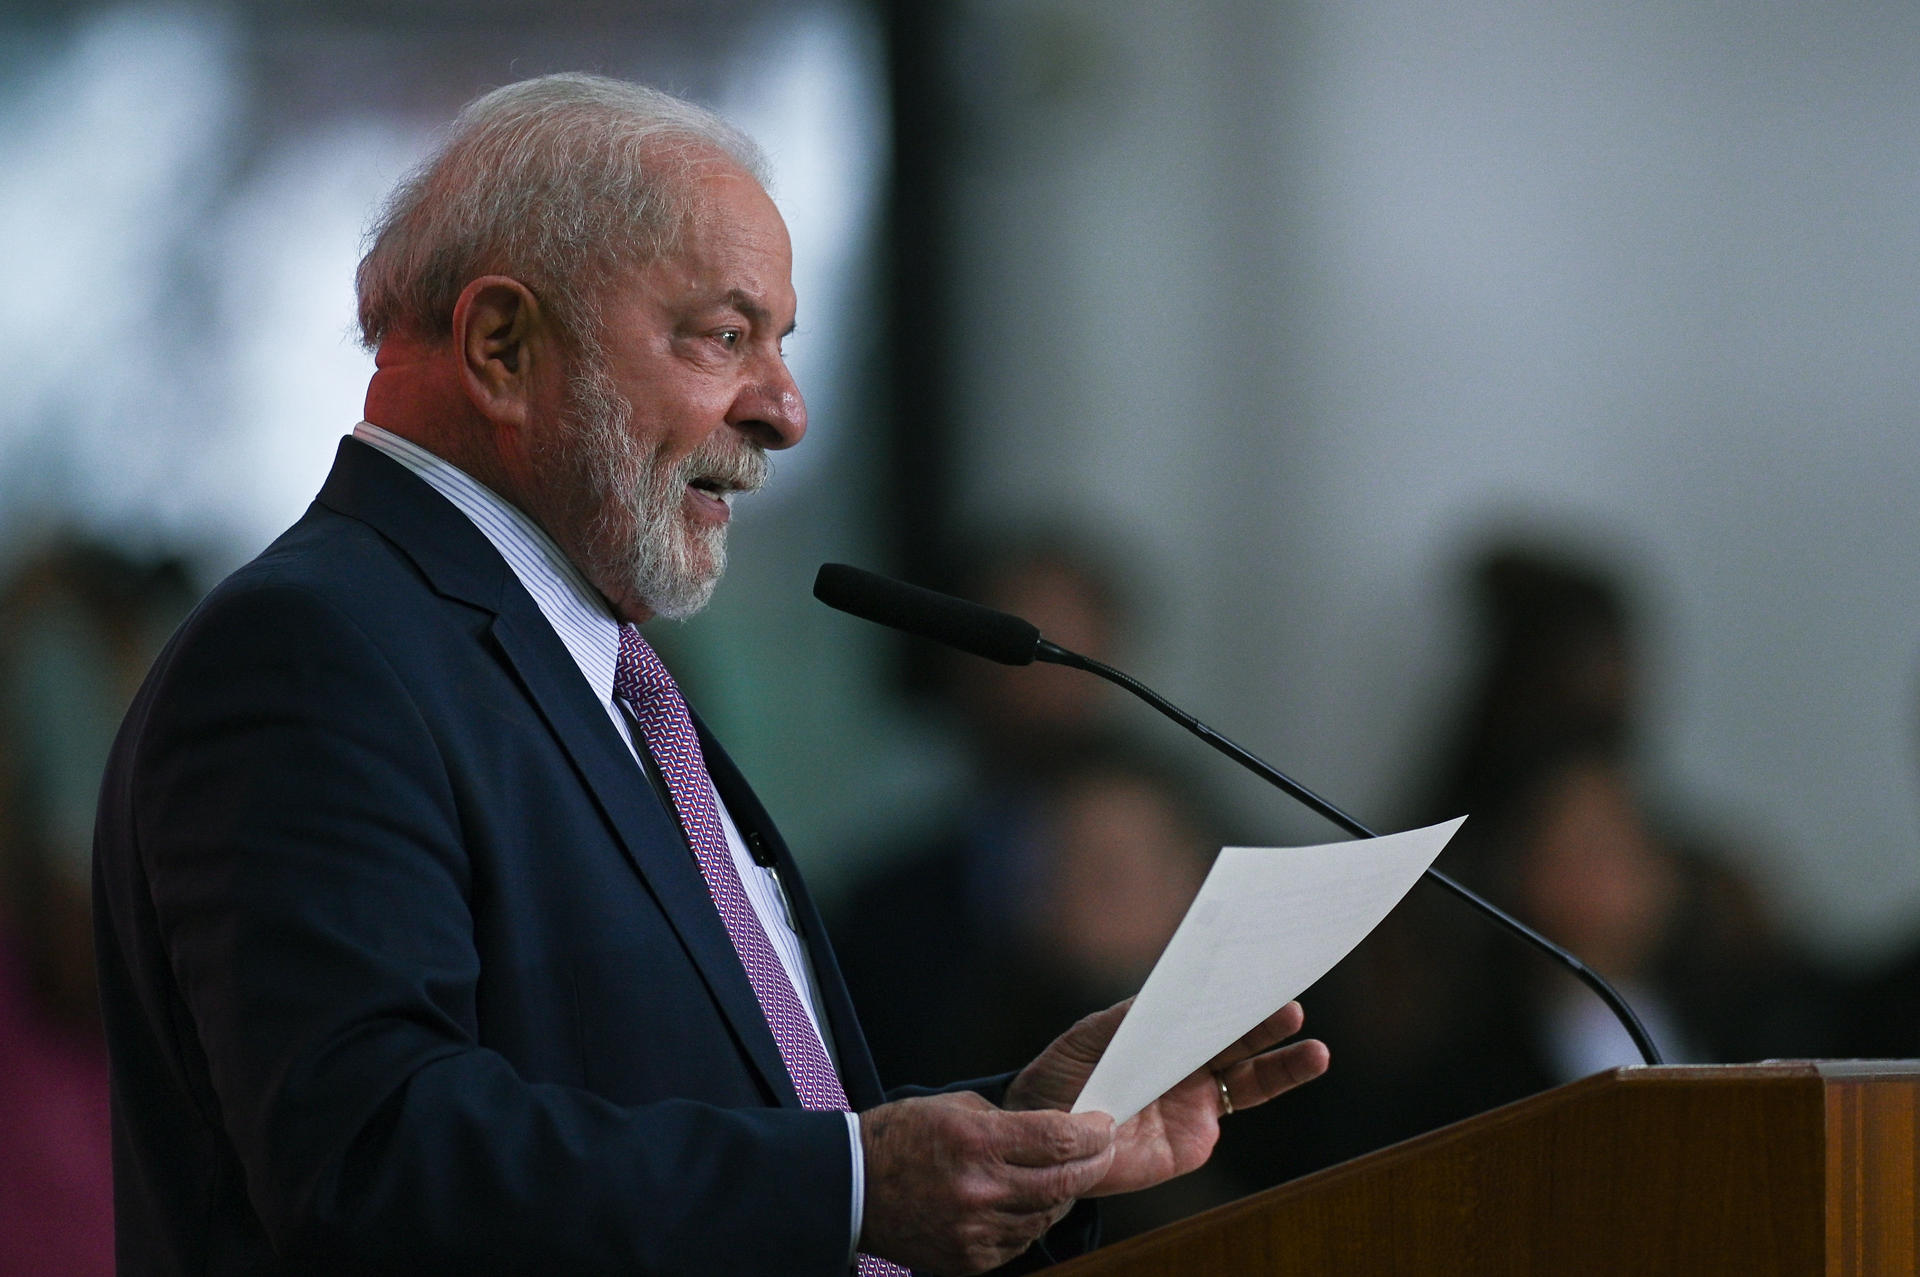 Brazilian President Luiz Inacio Lula da Silva speaks at an event in Brasilia on 21 March 2023. EFE/Andre Borges